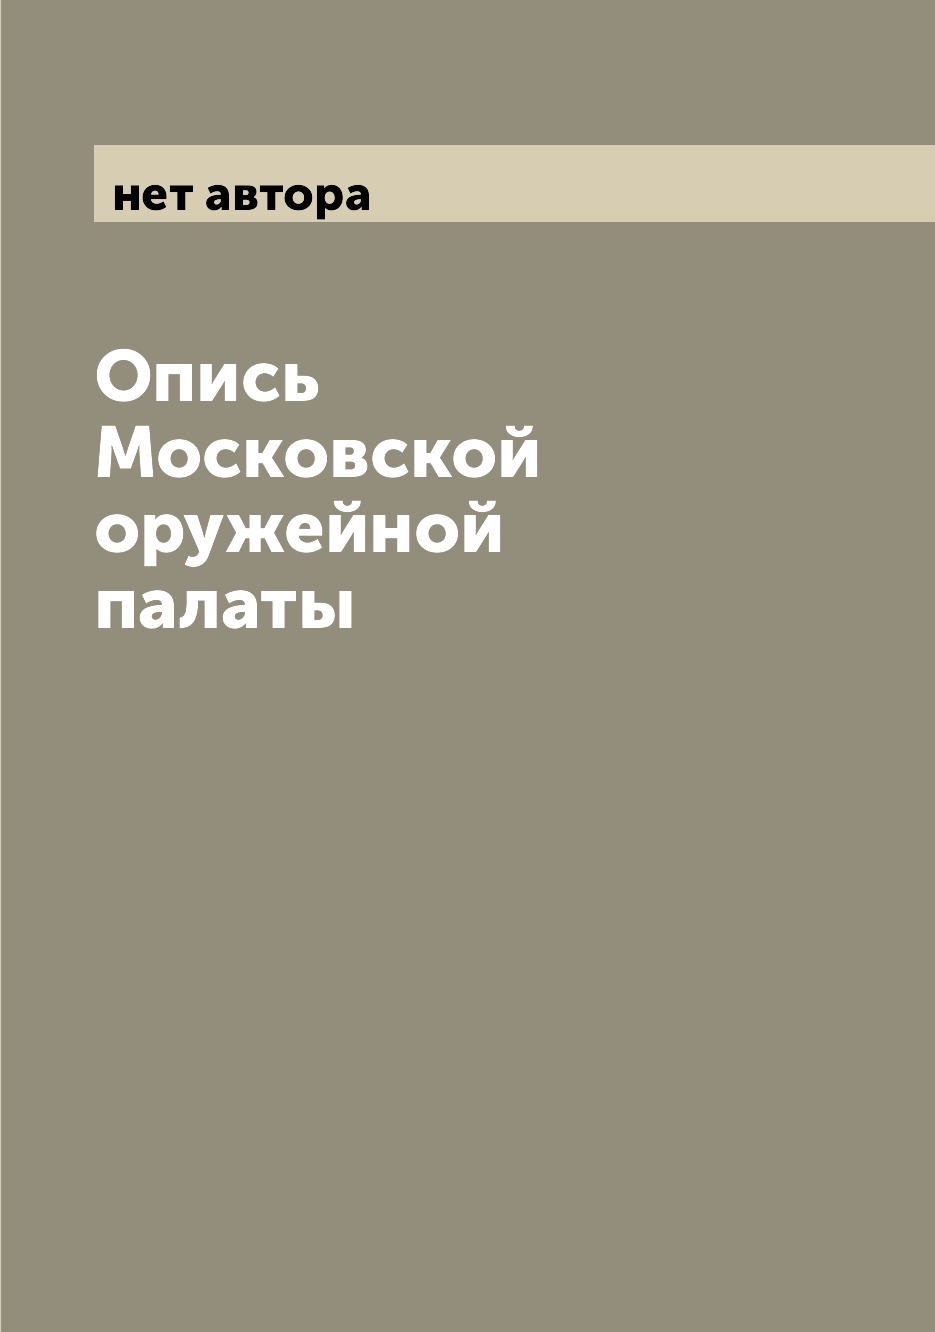 фото Книга опись московской оружейной палаты archive publica